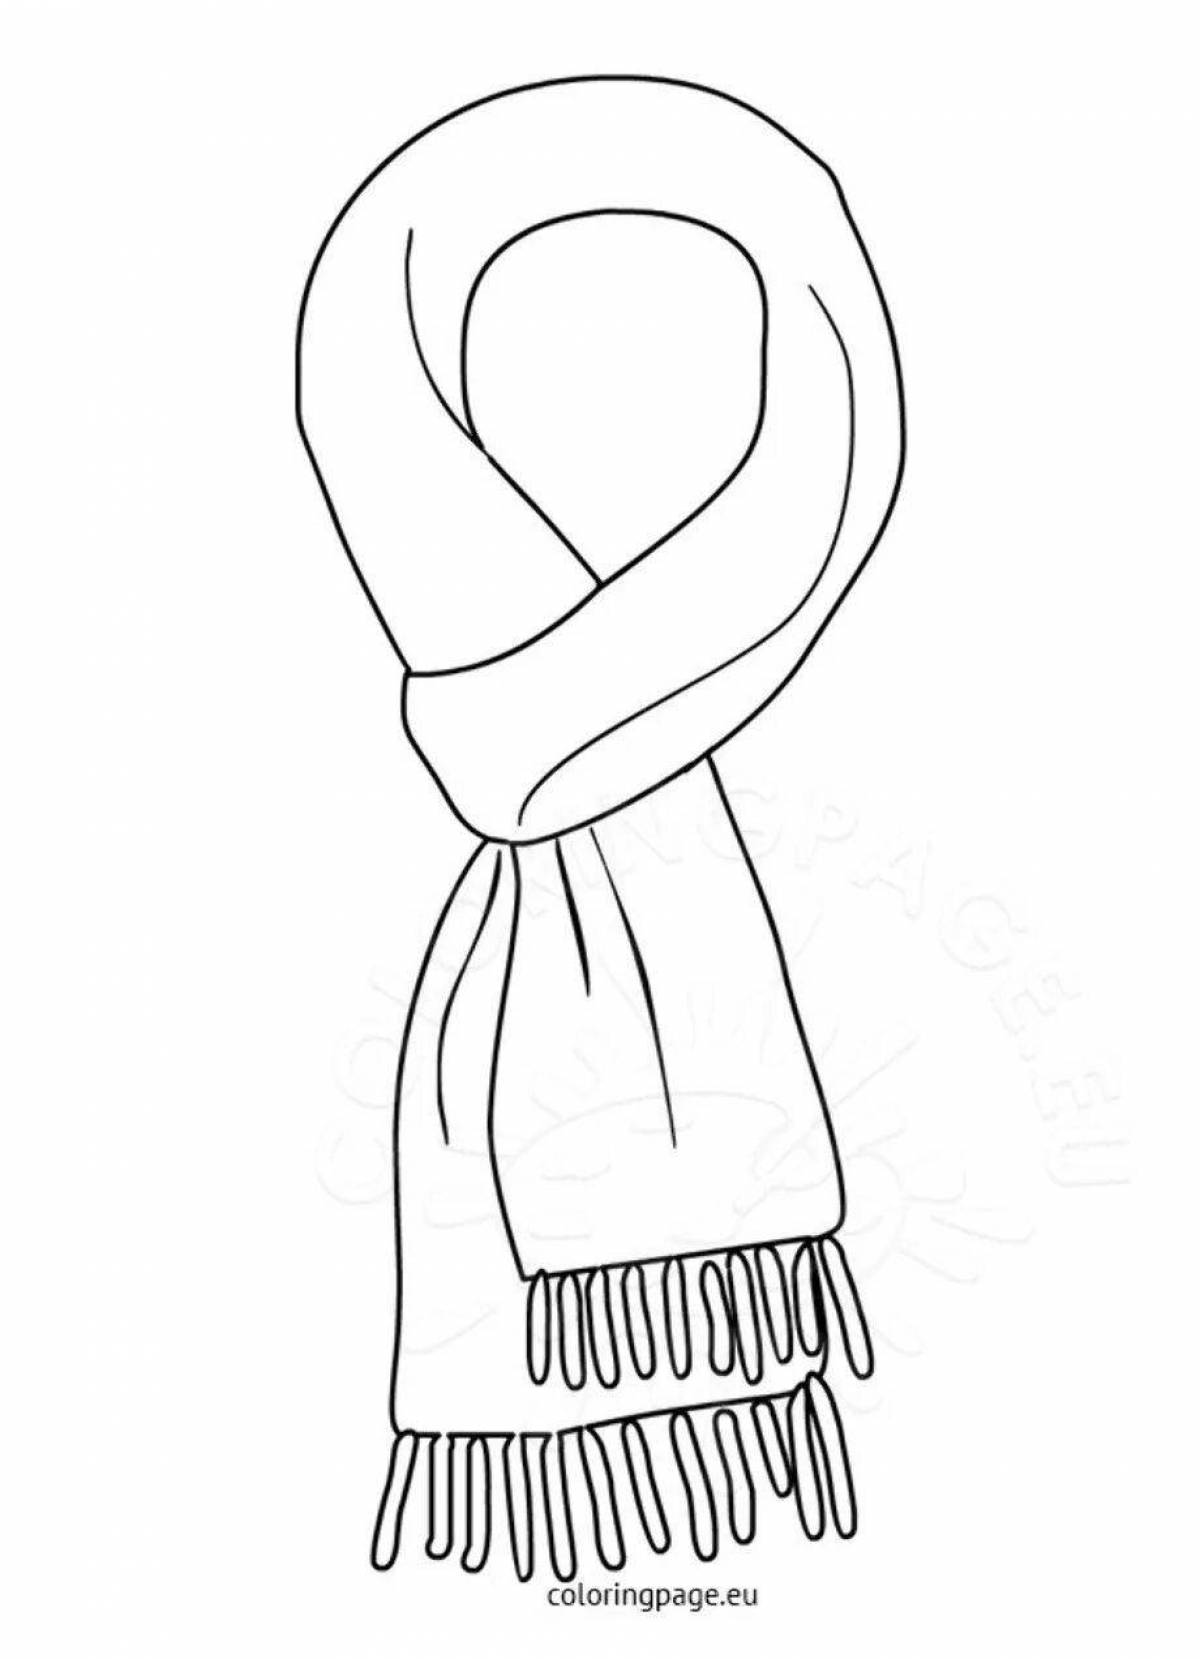 Как раскрасить шарф узорами: 3 простых и эффектных идеи для тех, кто не умеет рисовать